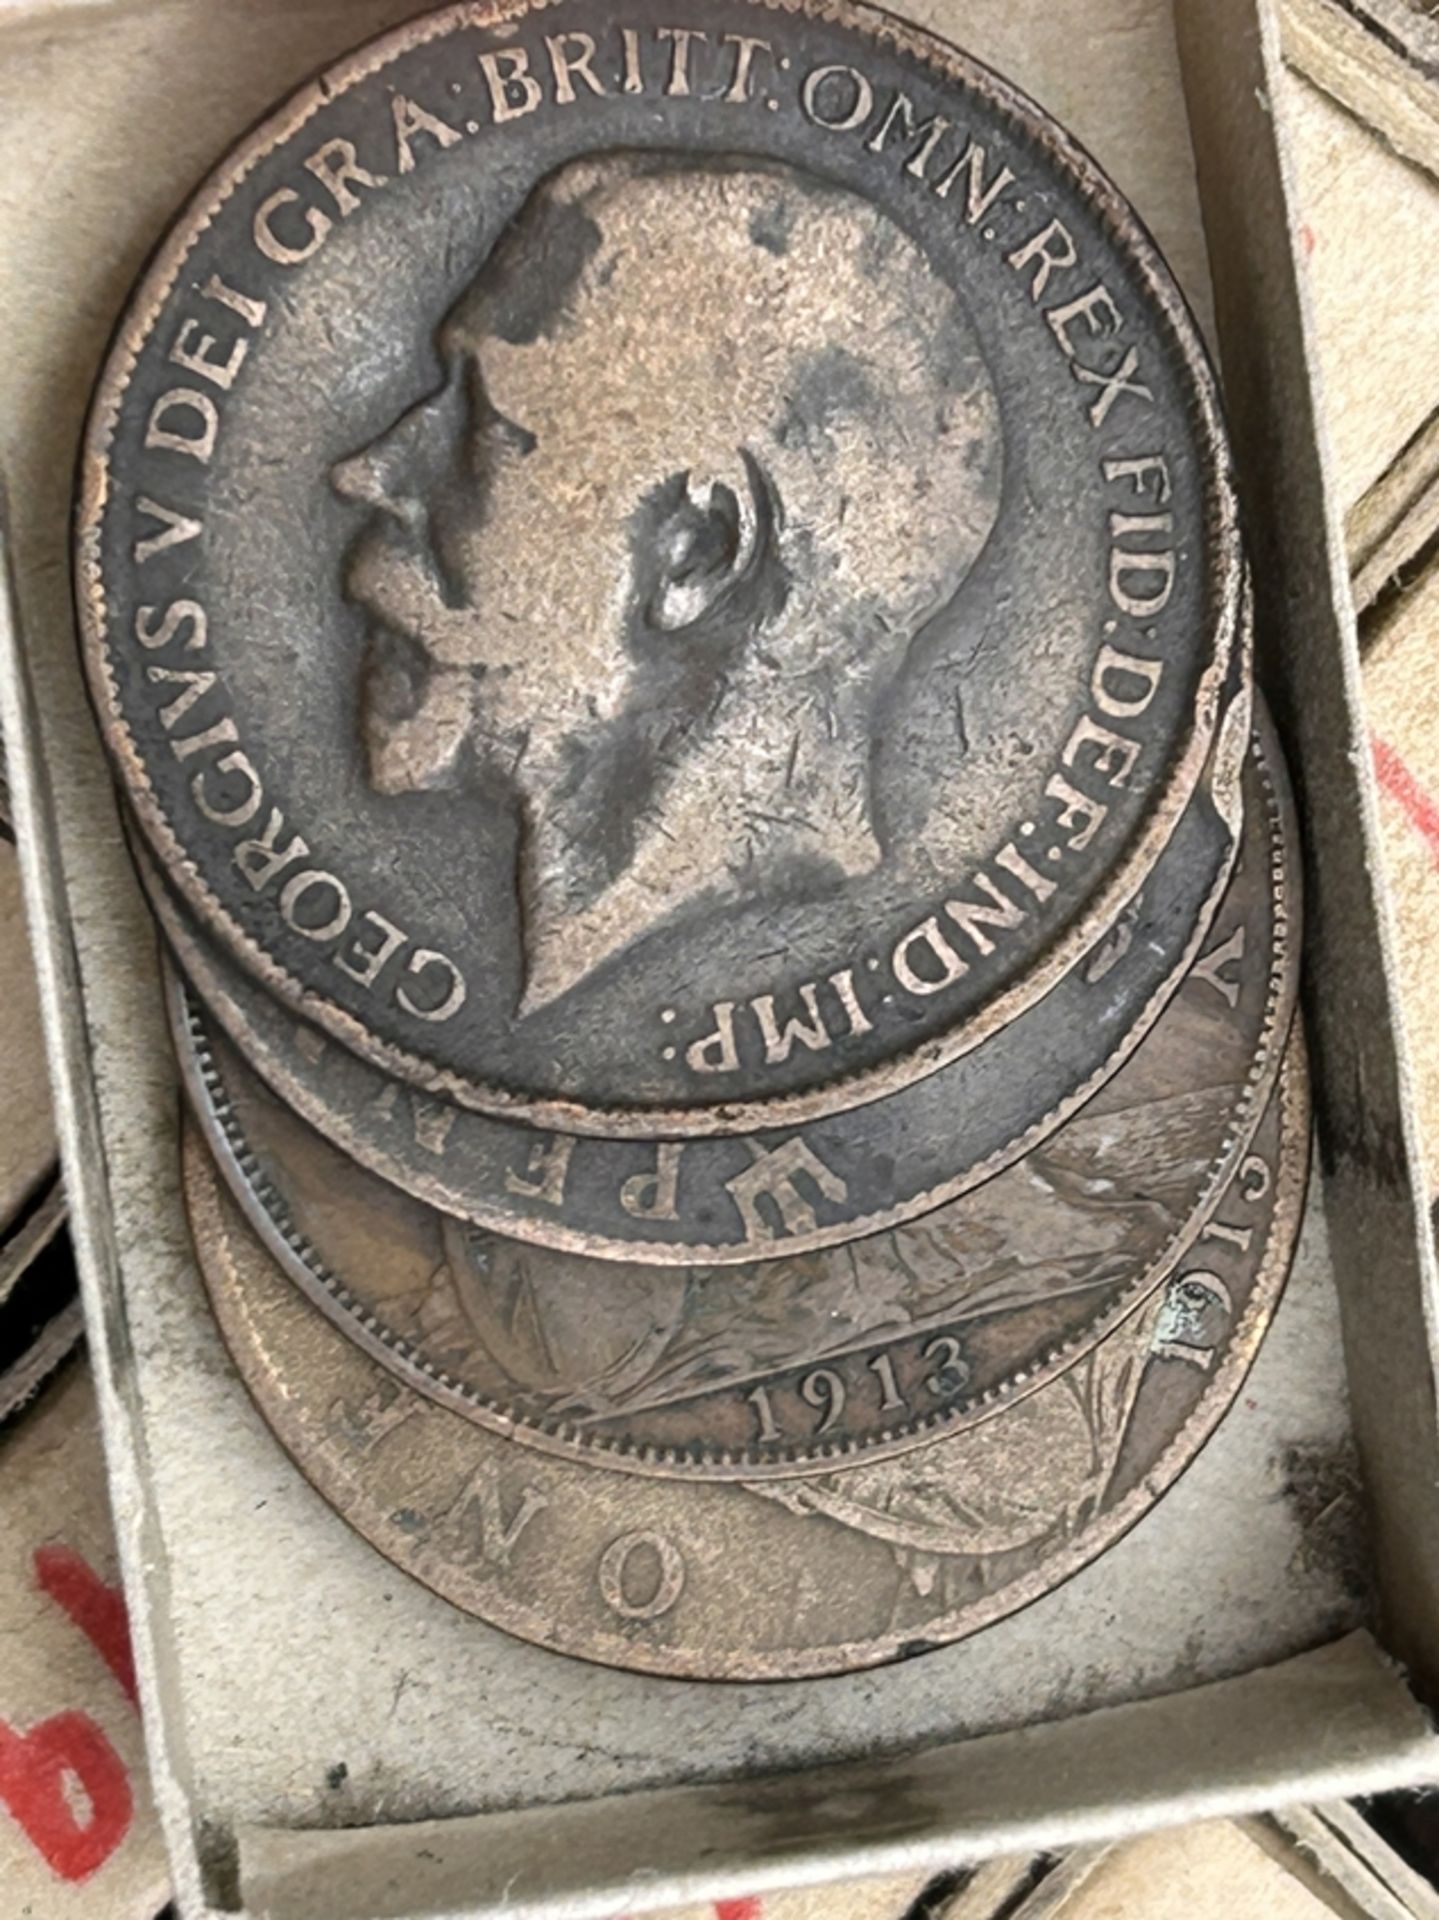 Zigarrenschachtel mit 1 Penny Münzen, ca, 1897 bis 1915, in machen Streichholzschachteln bis zu vie - Bild 5 aus 5